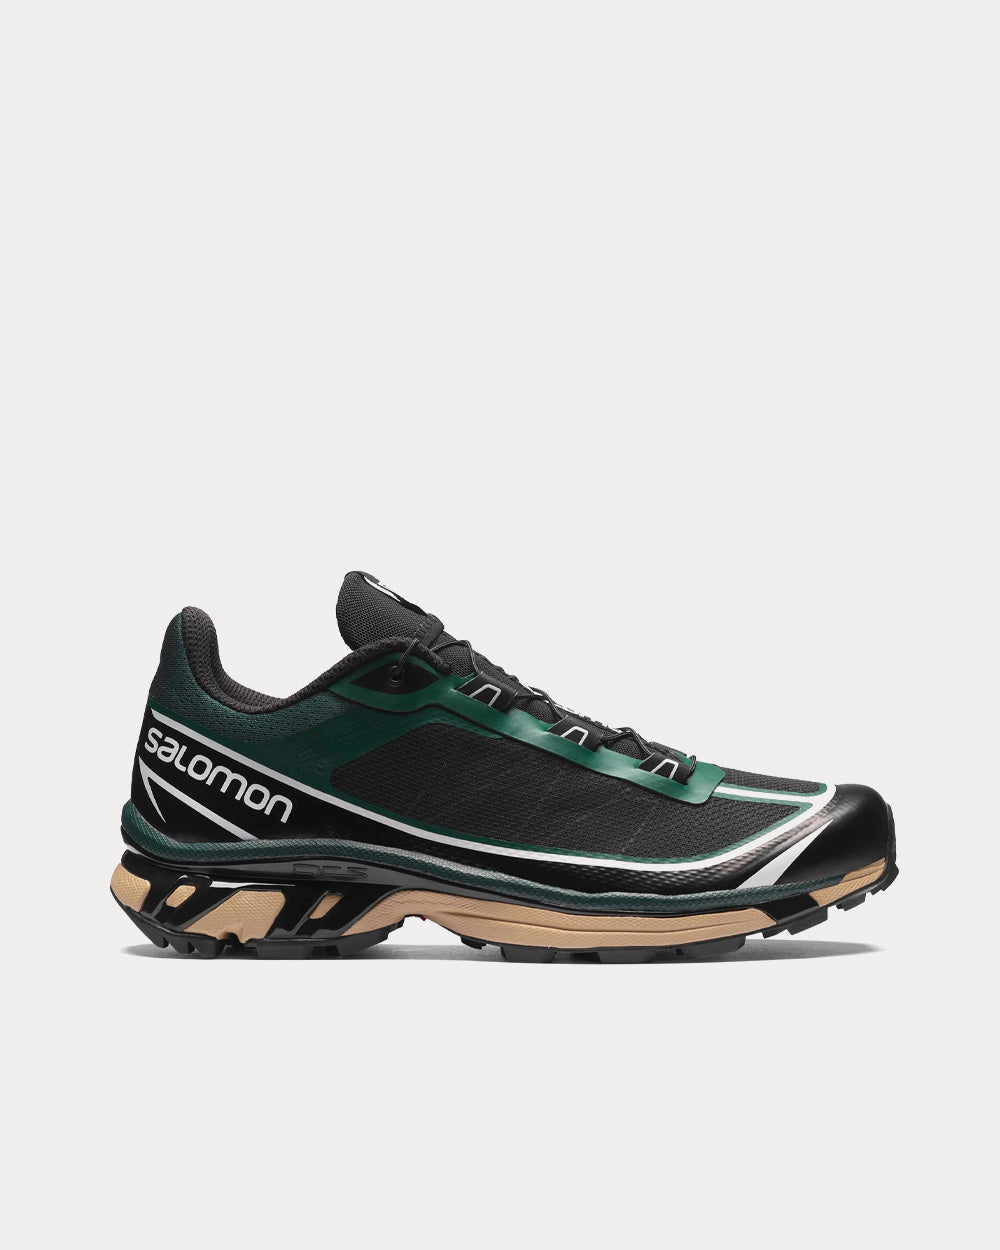 XT-6 Ponderosa Pine / Black / Safari Low Top Sneakers